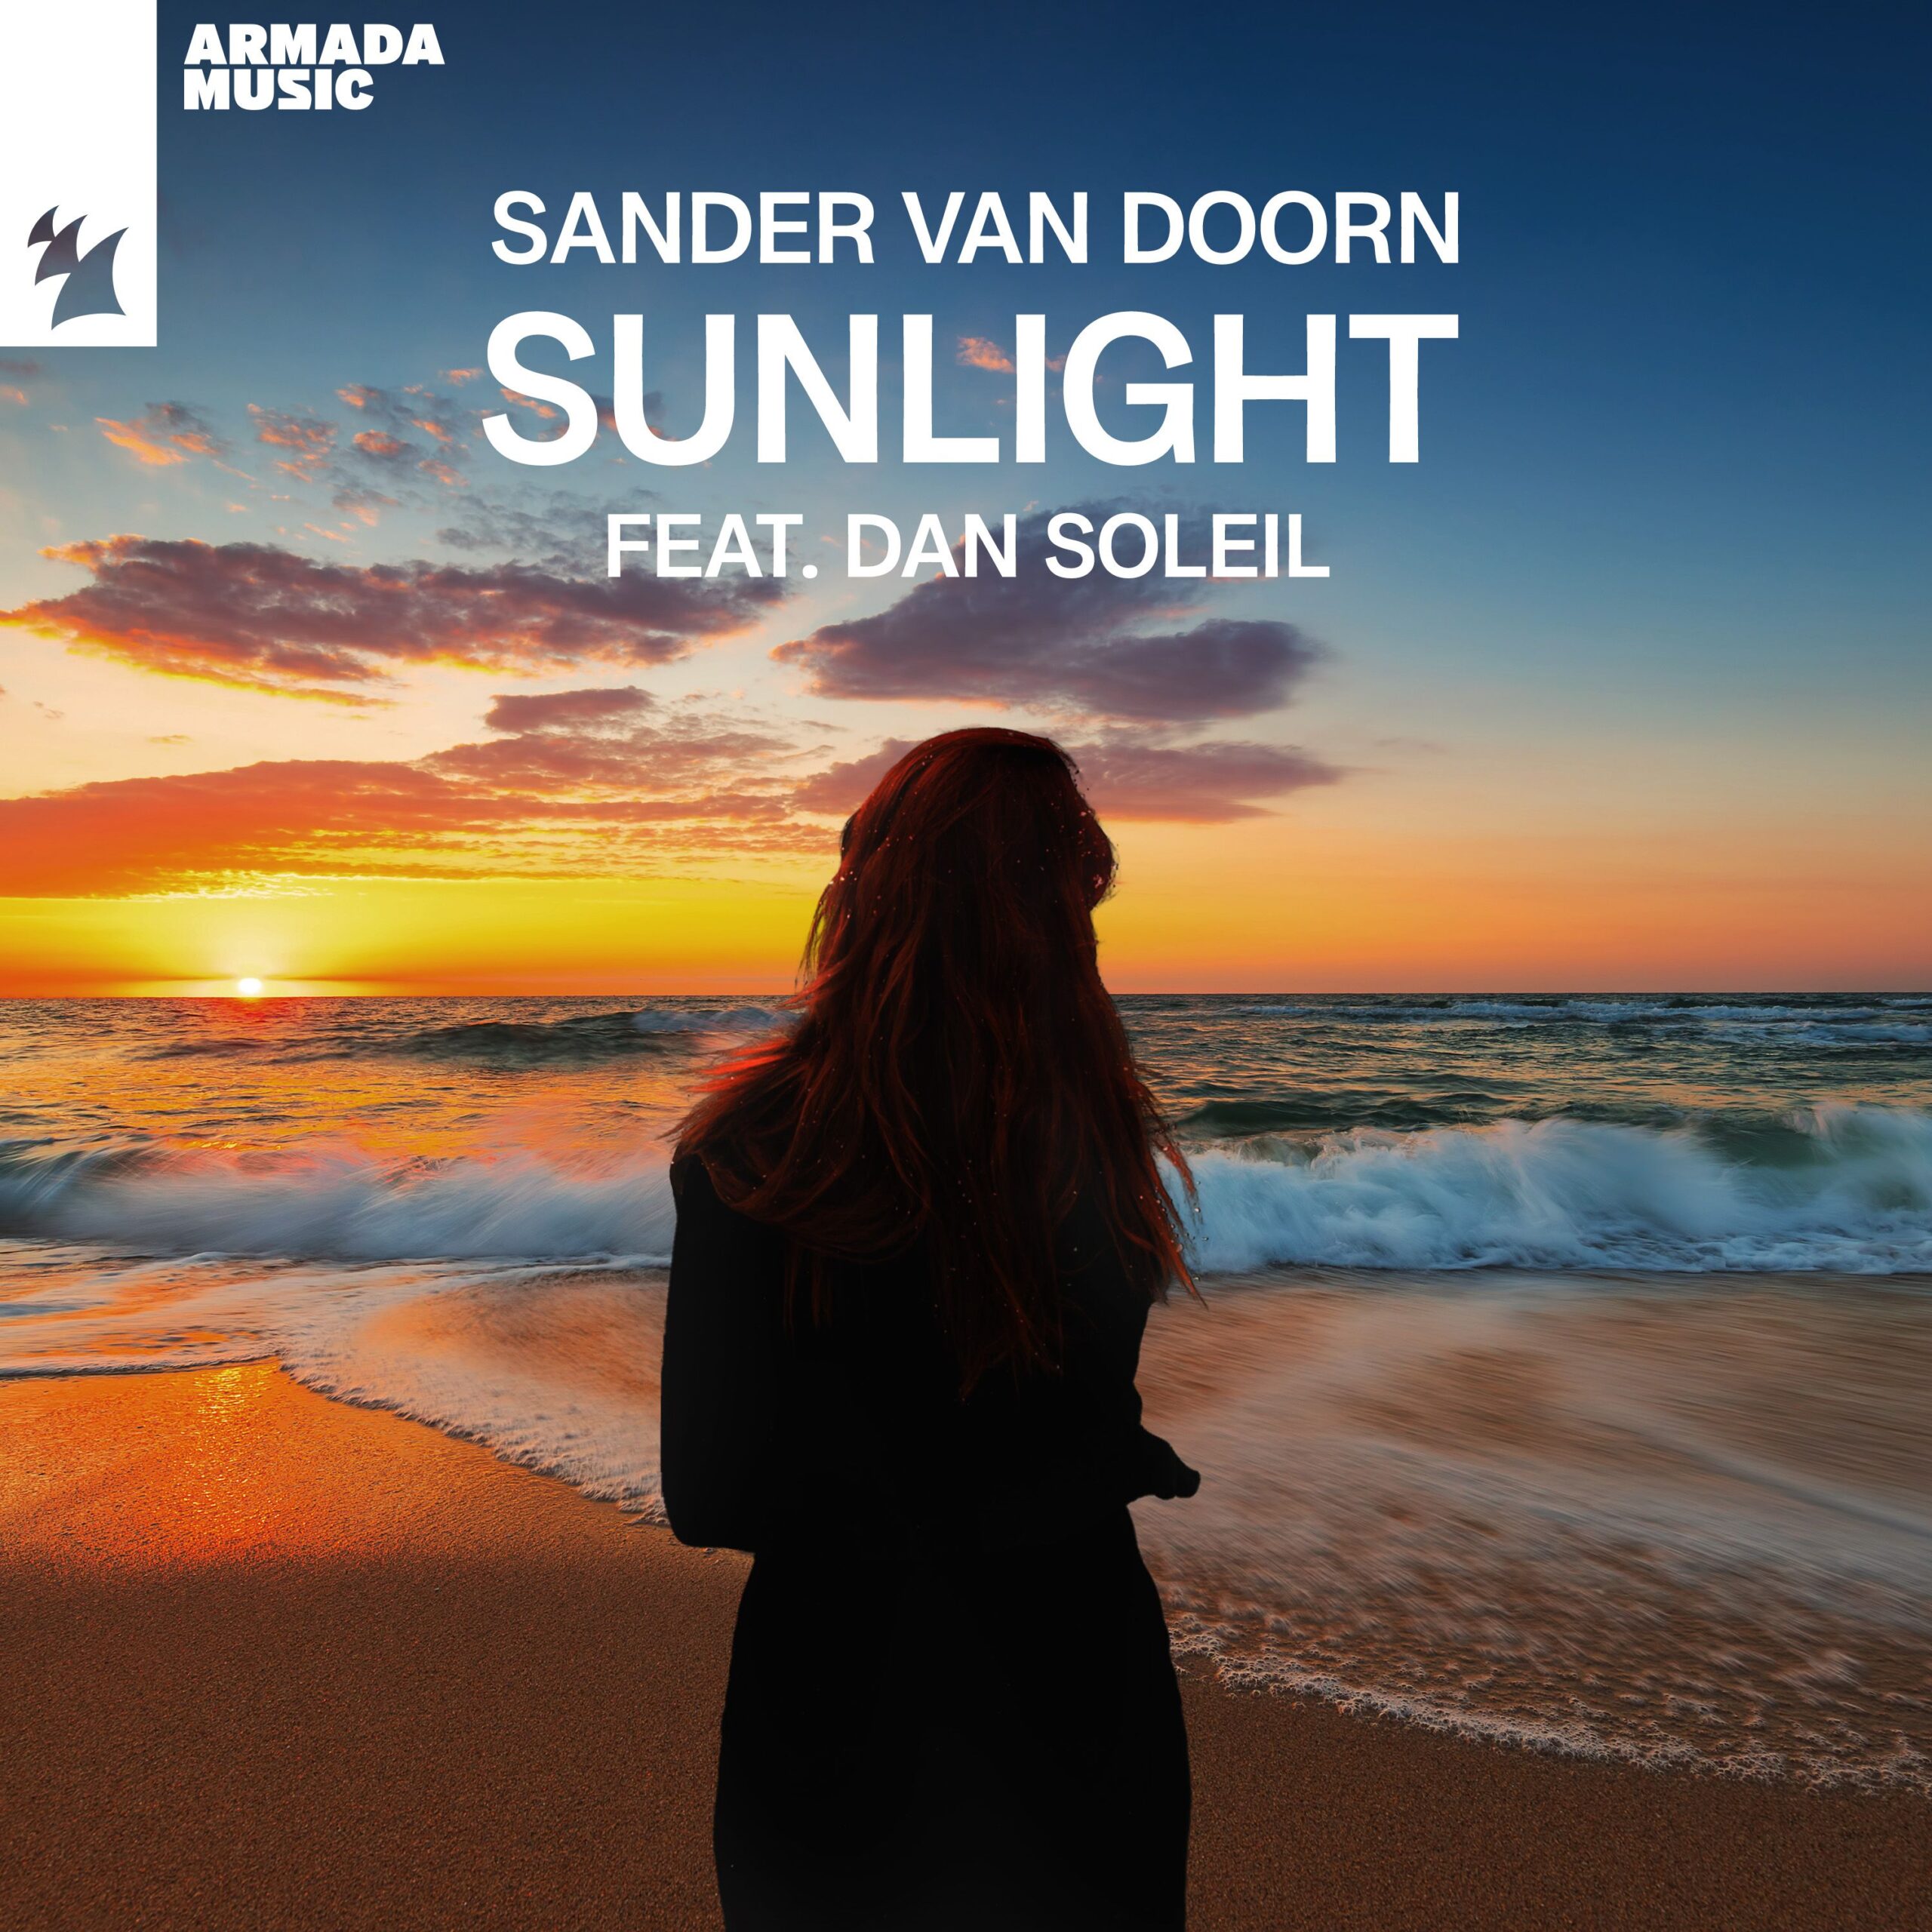 Sander van Doorn feat. Dan Soleil presents Sunlight on Armada Music